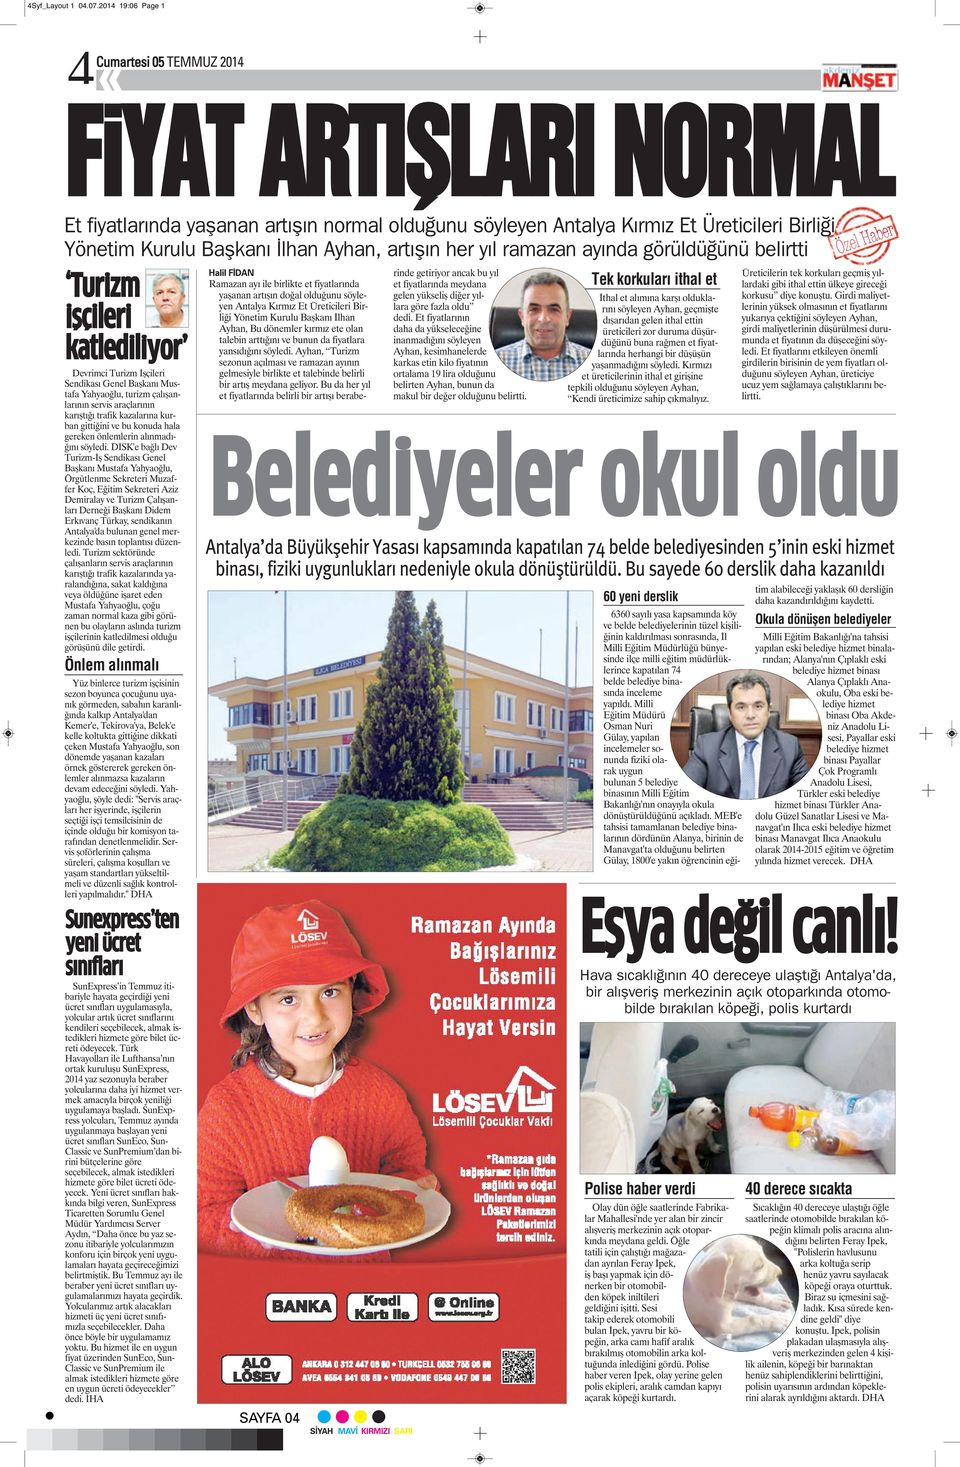 artışın her yıl ramazan ayında görüldüğünü belirtti Turizm işçileri katlediliyor Devrimci Turizm İşçileri Sendikası Genel Başkanı Mustafa Yahyaoğlu, turizm çalışanlarının servis araçlarının karıştığı